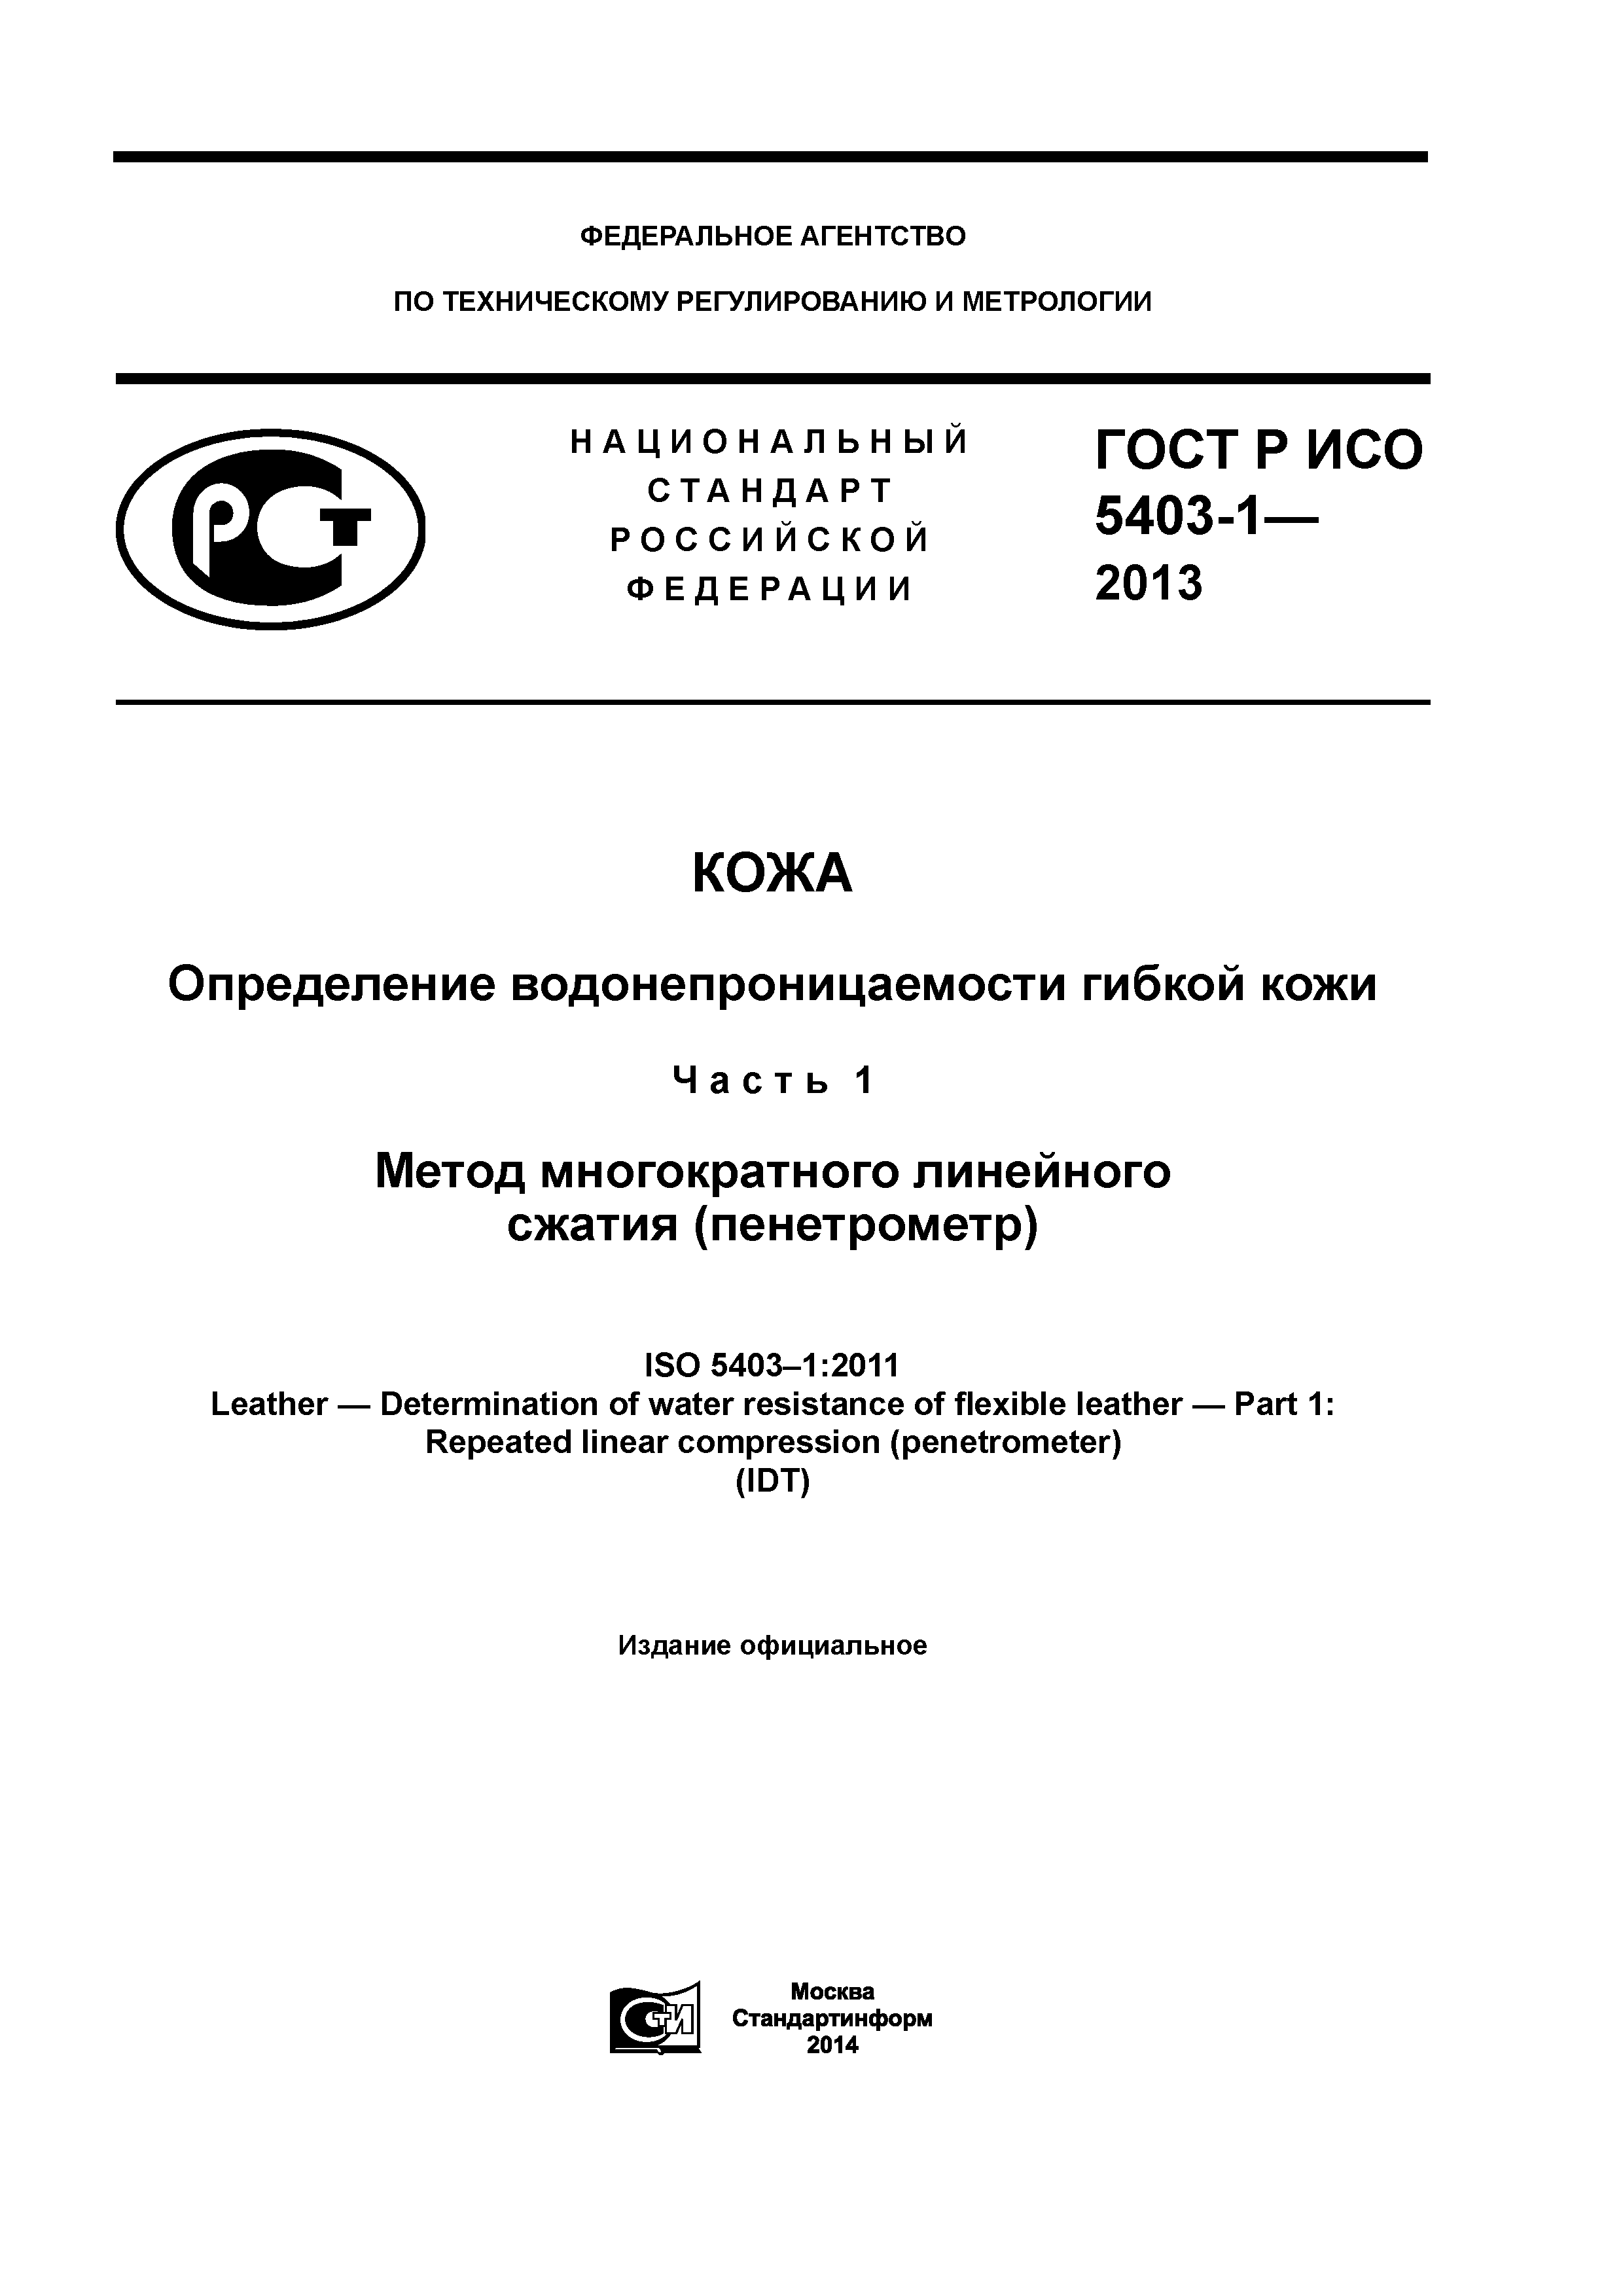 ГОСТ Р ИСО 5403-1-2013